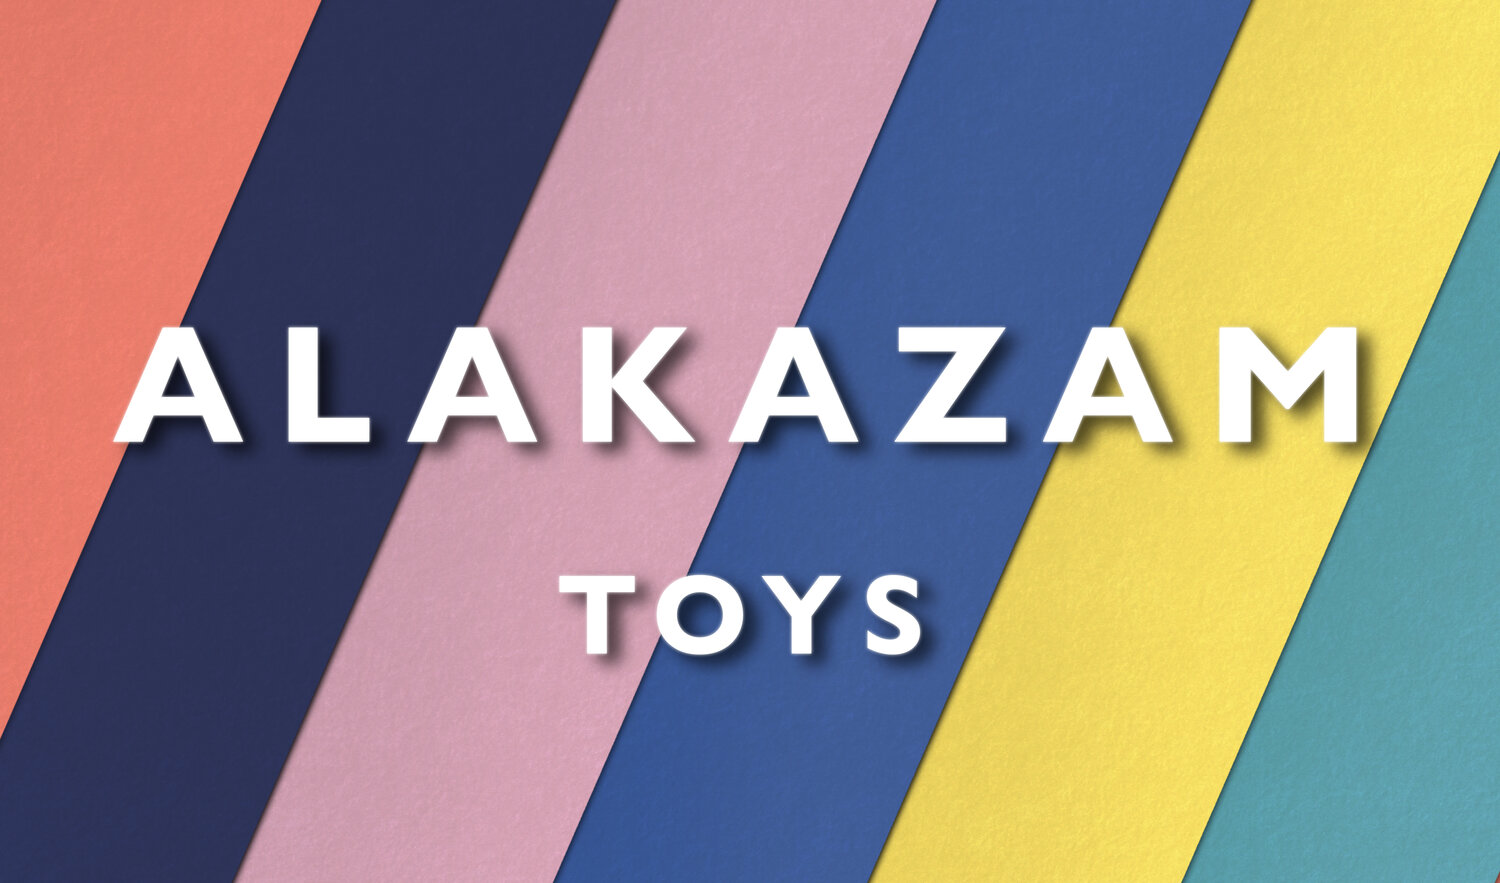 Alakazam Toys  Gifts